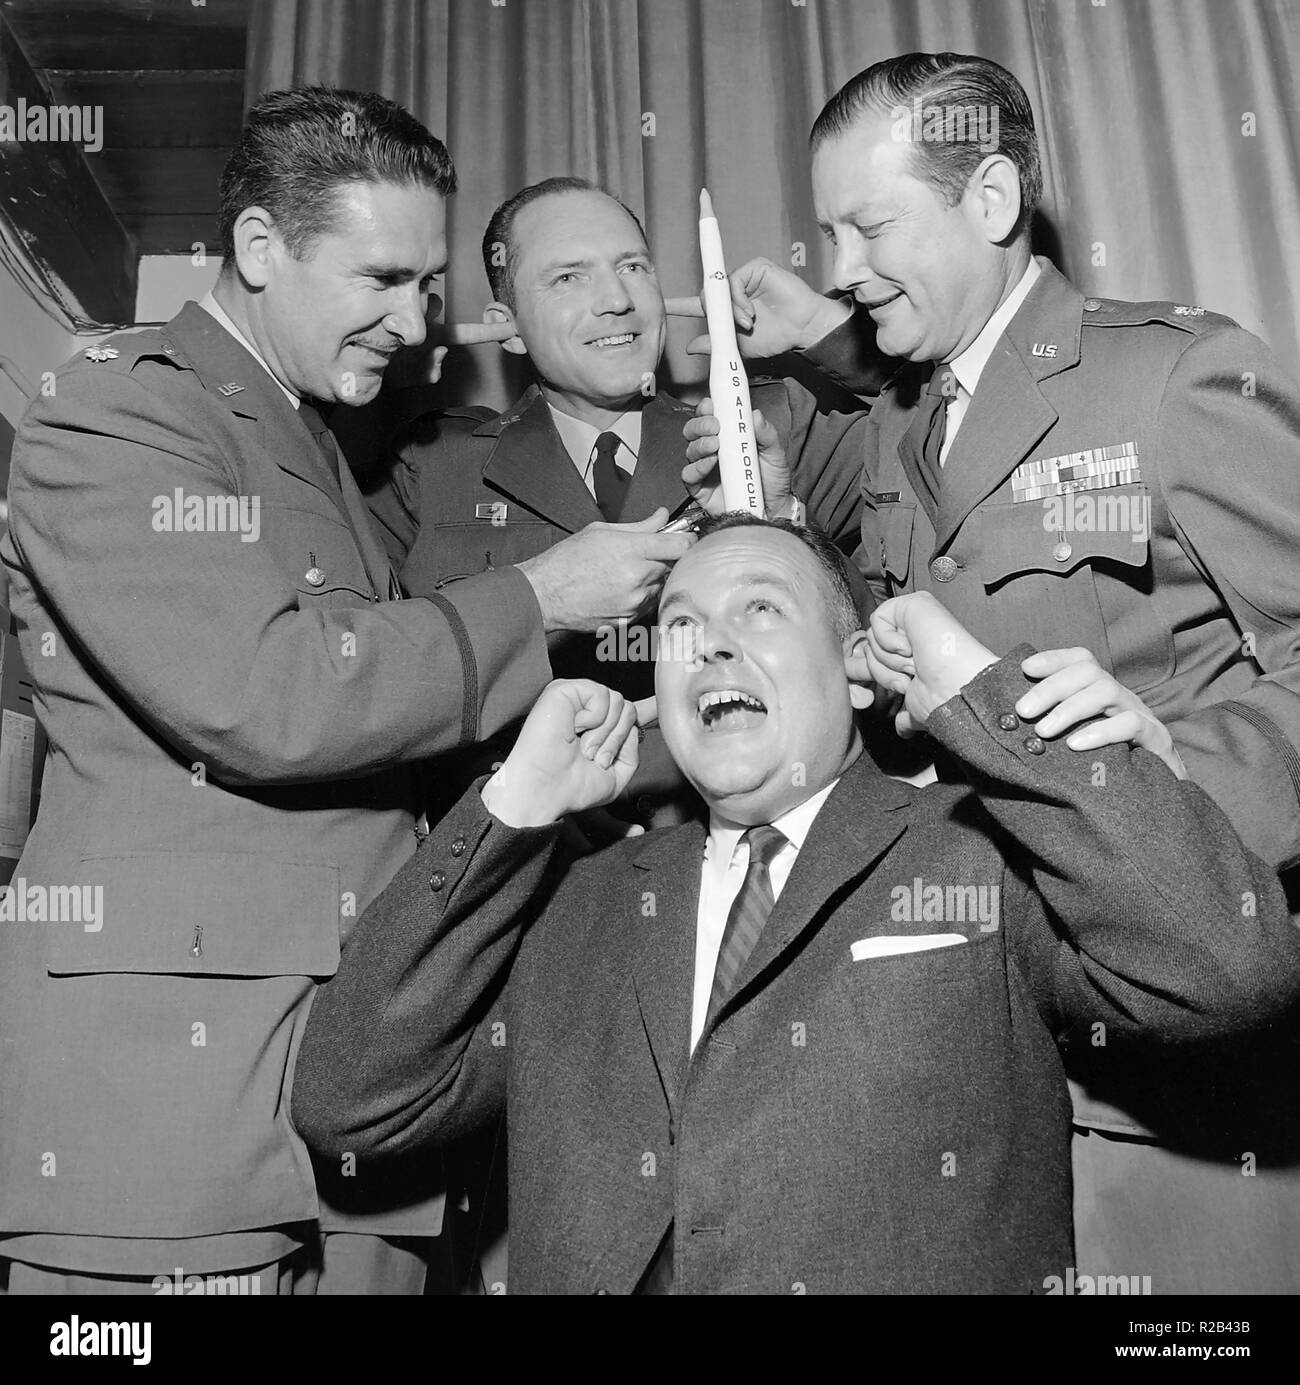 Certains officiers de l'US Air Force s'maladroit avec une fusée sur la tête d'un homme, ca. 1960. Banque D'Images